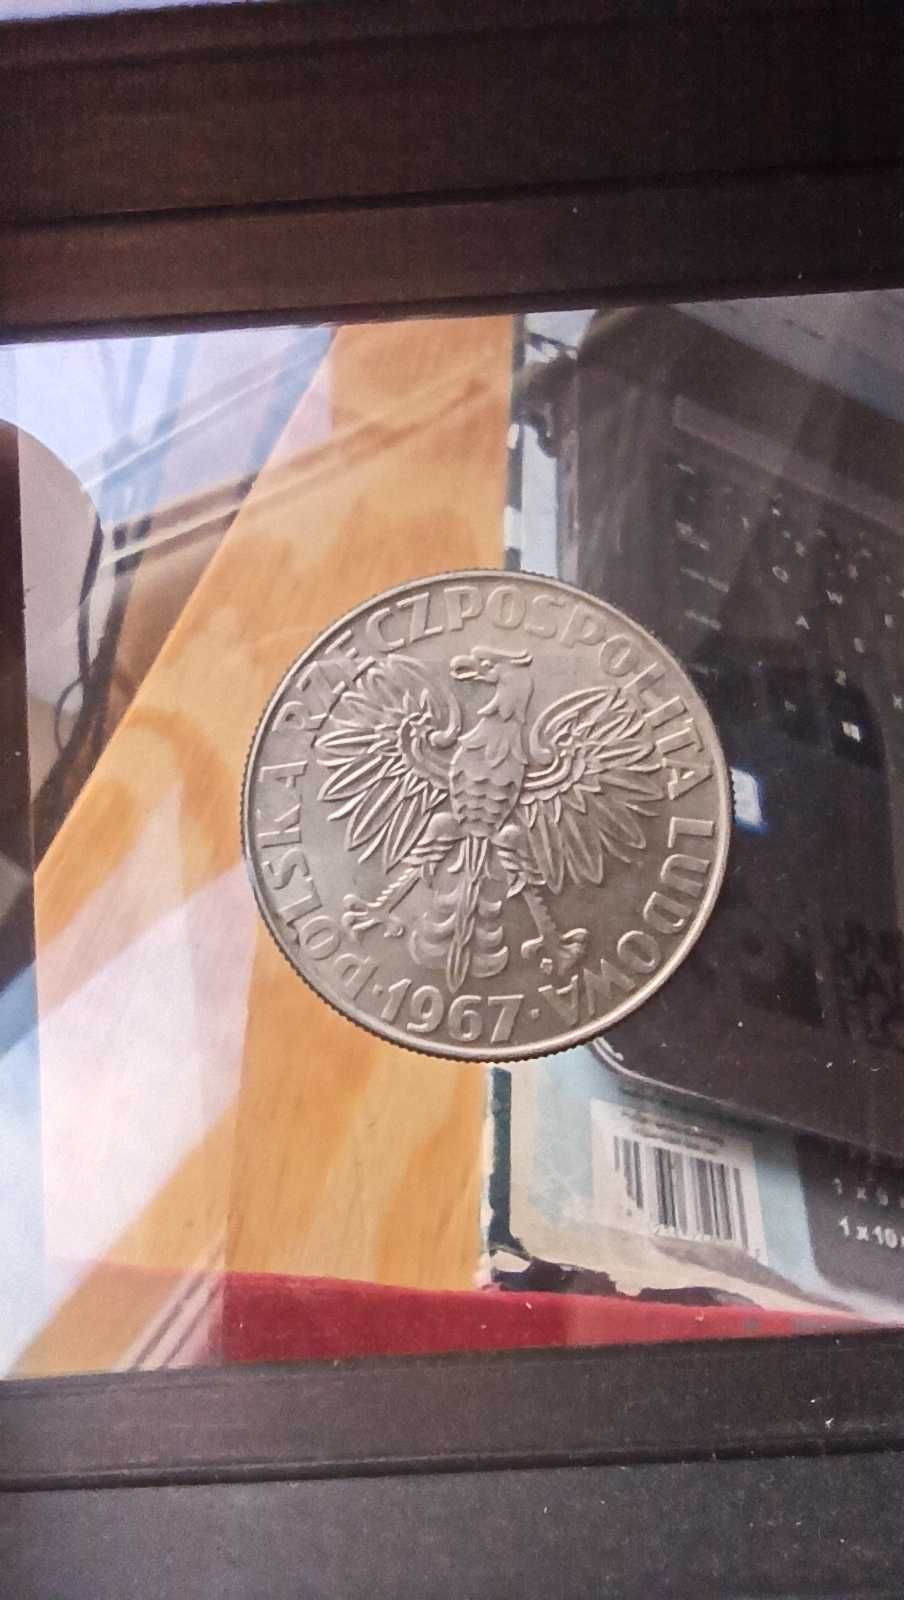 PRL, Moneta 10 złotych Skłodowska-Curie 1967r / Mennicza